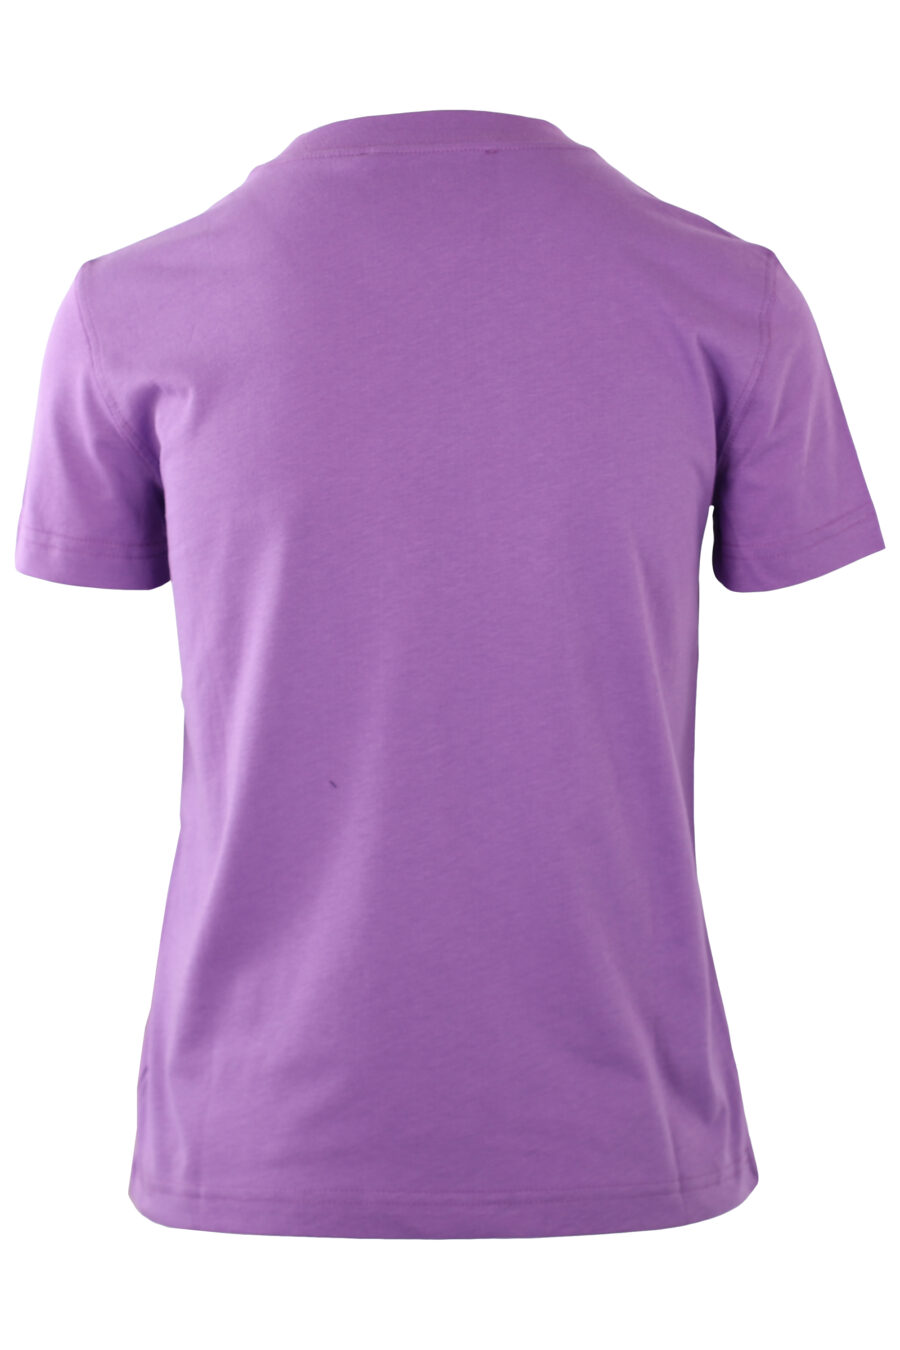 Camiseta morada con logo redondo monocromático - IMG 0232